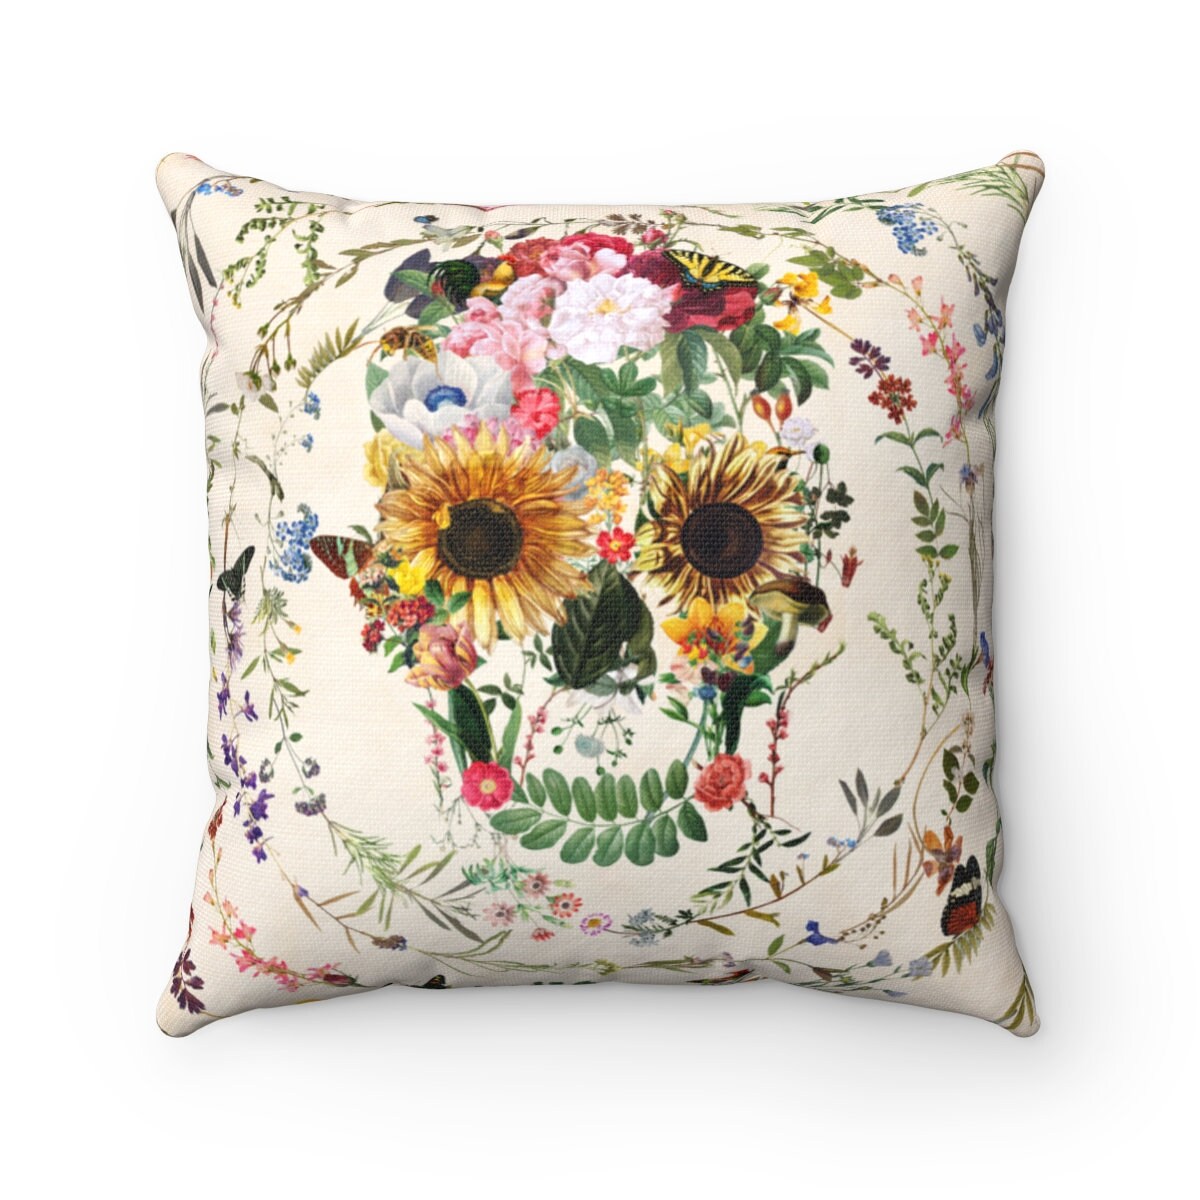 Flowery Skull Throw Pillow, Floral Skull Spun Polyester Square Pillow, Gothic Sugar Skull Home Decor, Boho Skull Pillow Decor Gift